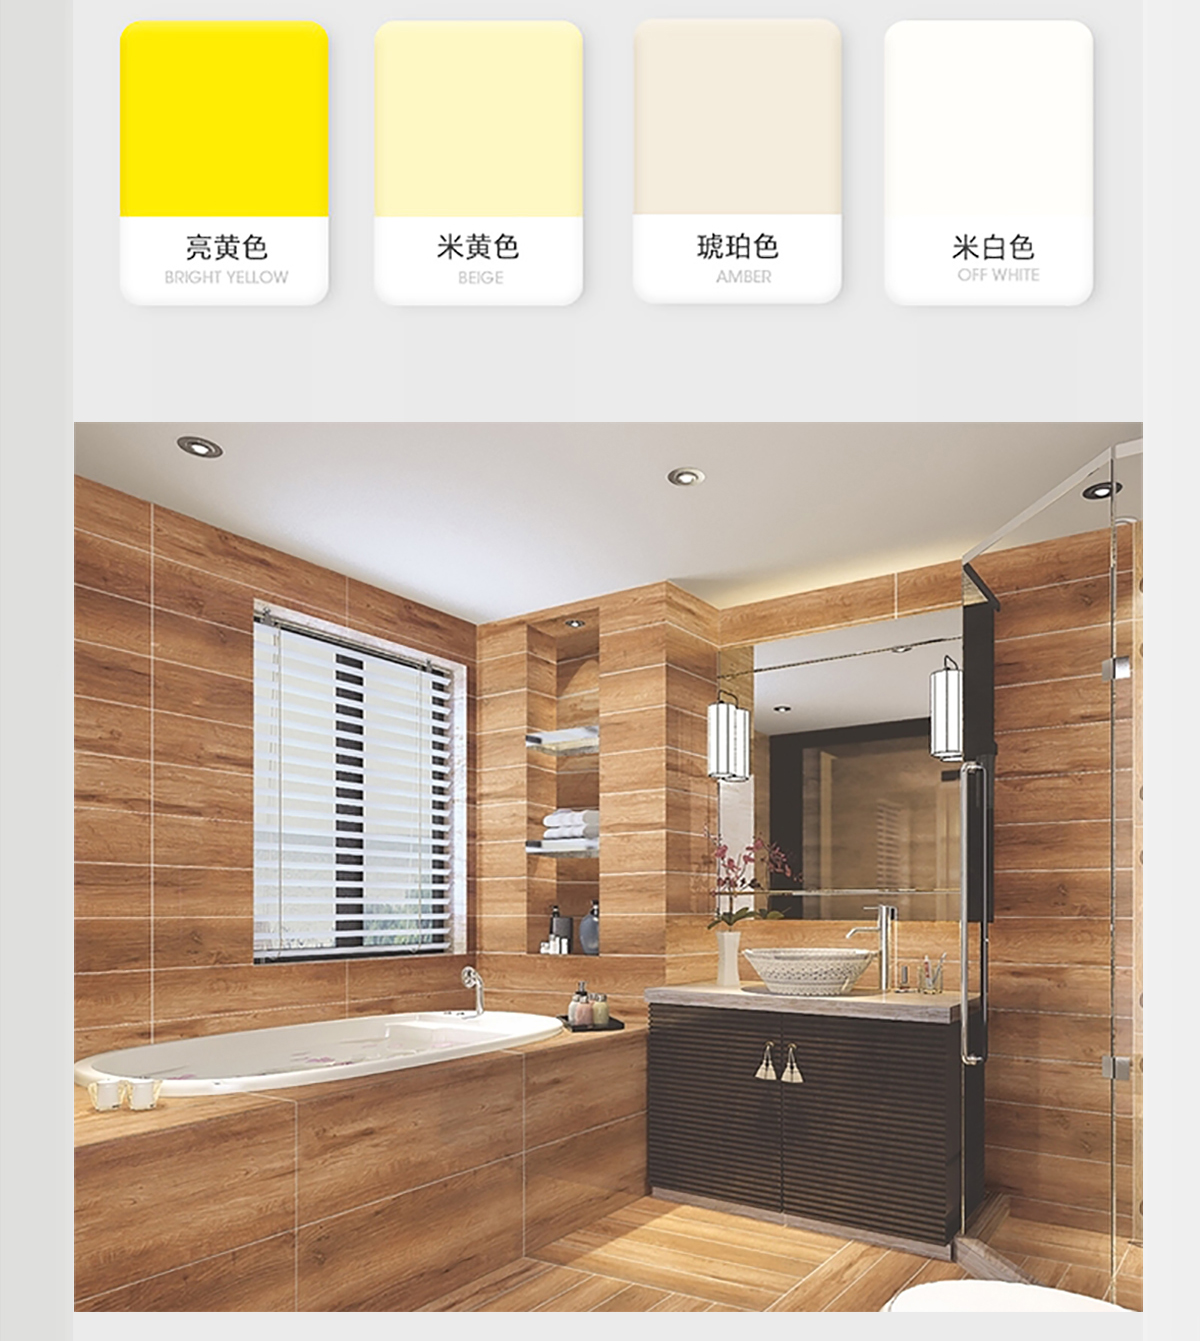 米奇高档卫浴柜系列家具漆-长图详情页_06.jpg